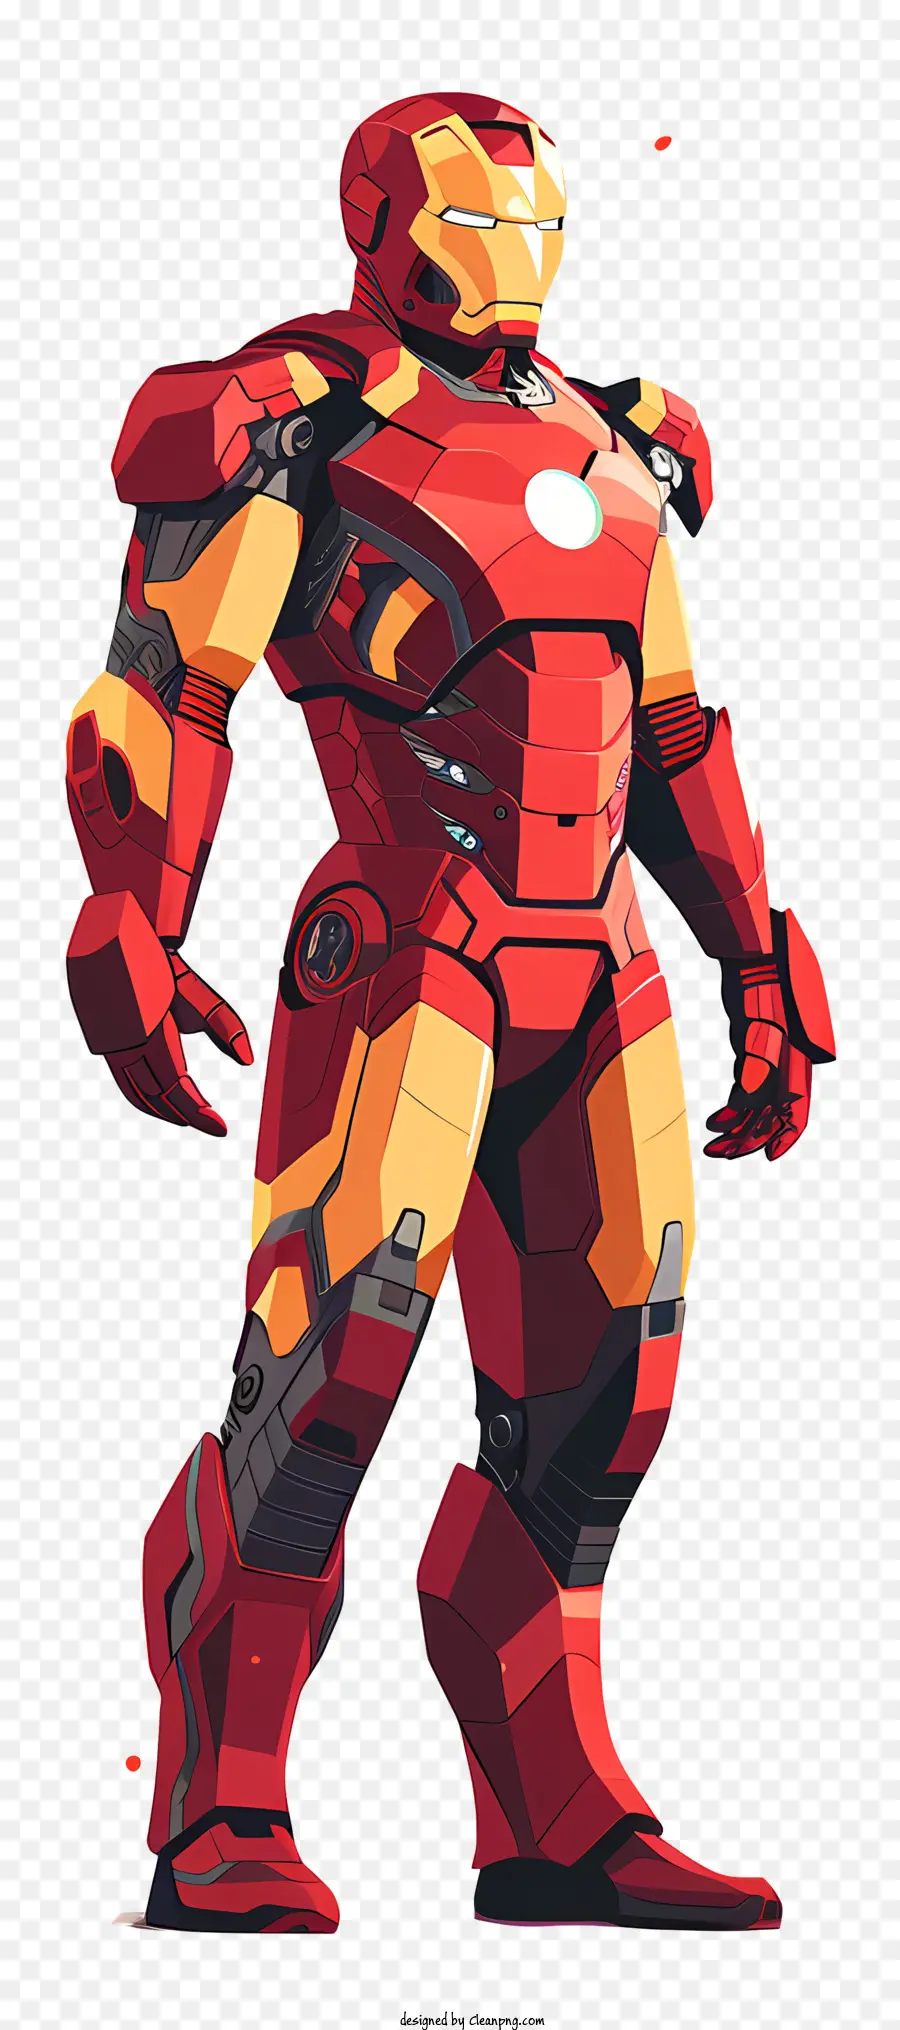 uomo di ferro - Iron Man, un supereroe con armatura rossa/dorata